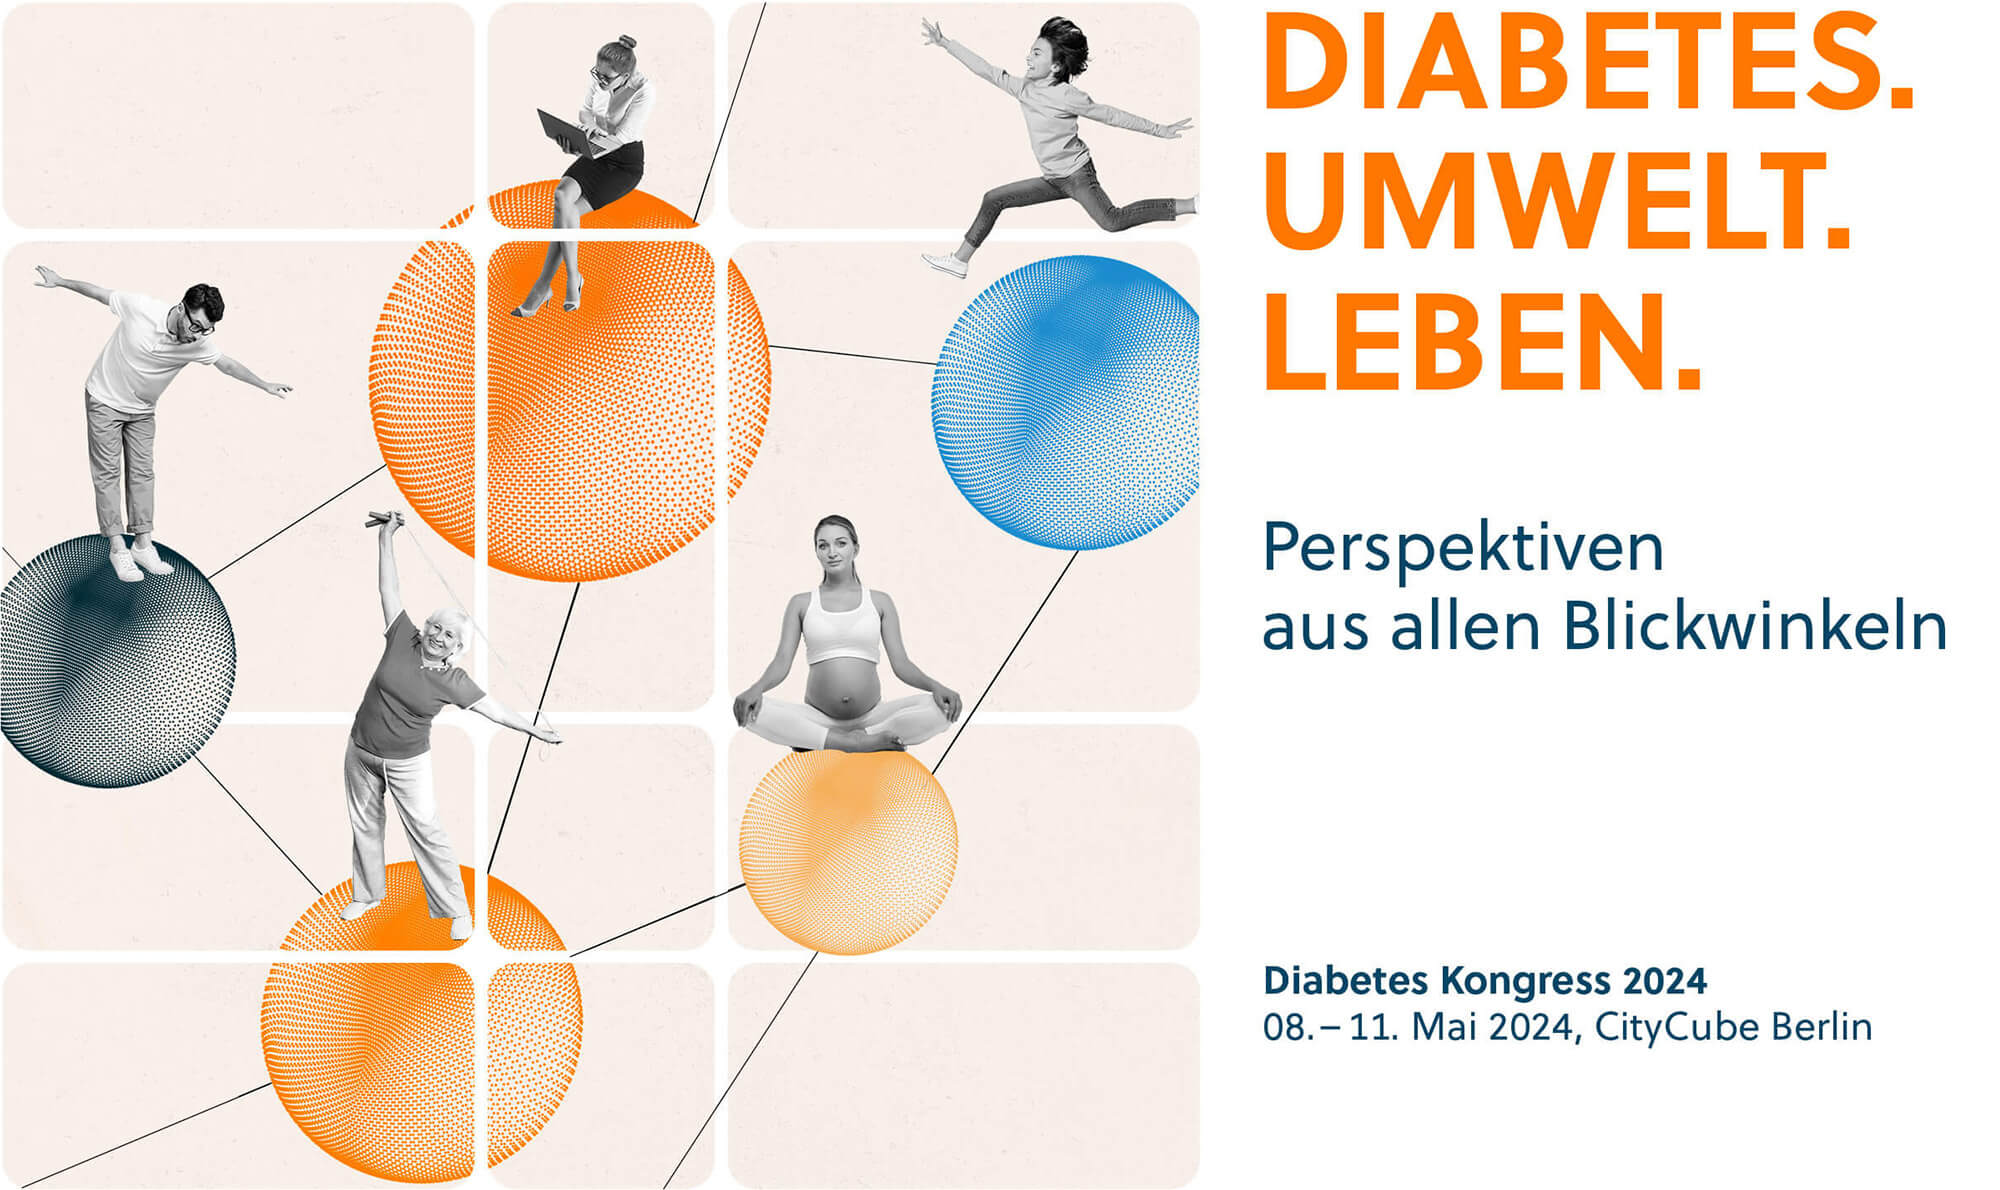 DIABETES. UMWELT. LEBEN. – Perspektiven aus allen Blickwinkeln. Diabetes Kongress 2024 08.-11. Mai 2024 CityCube Berlin